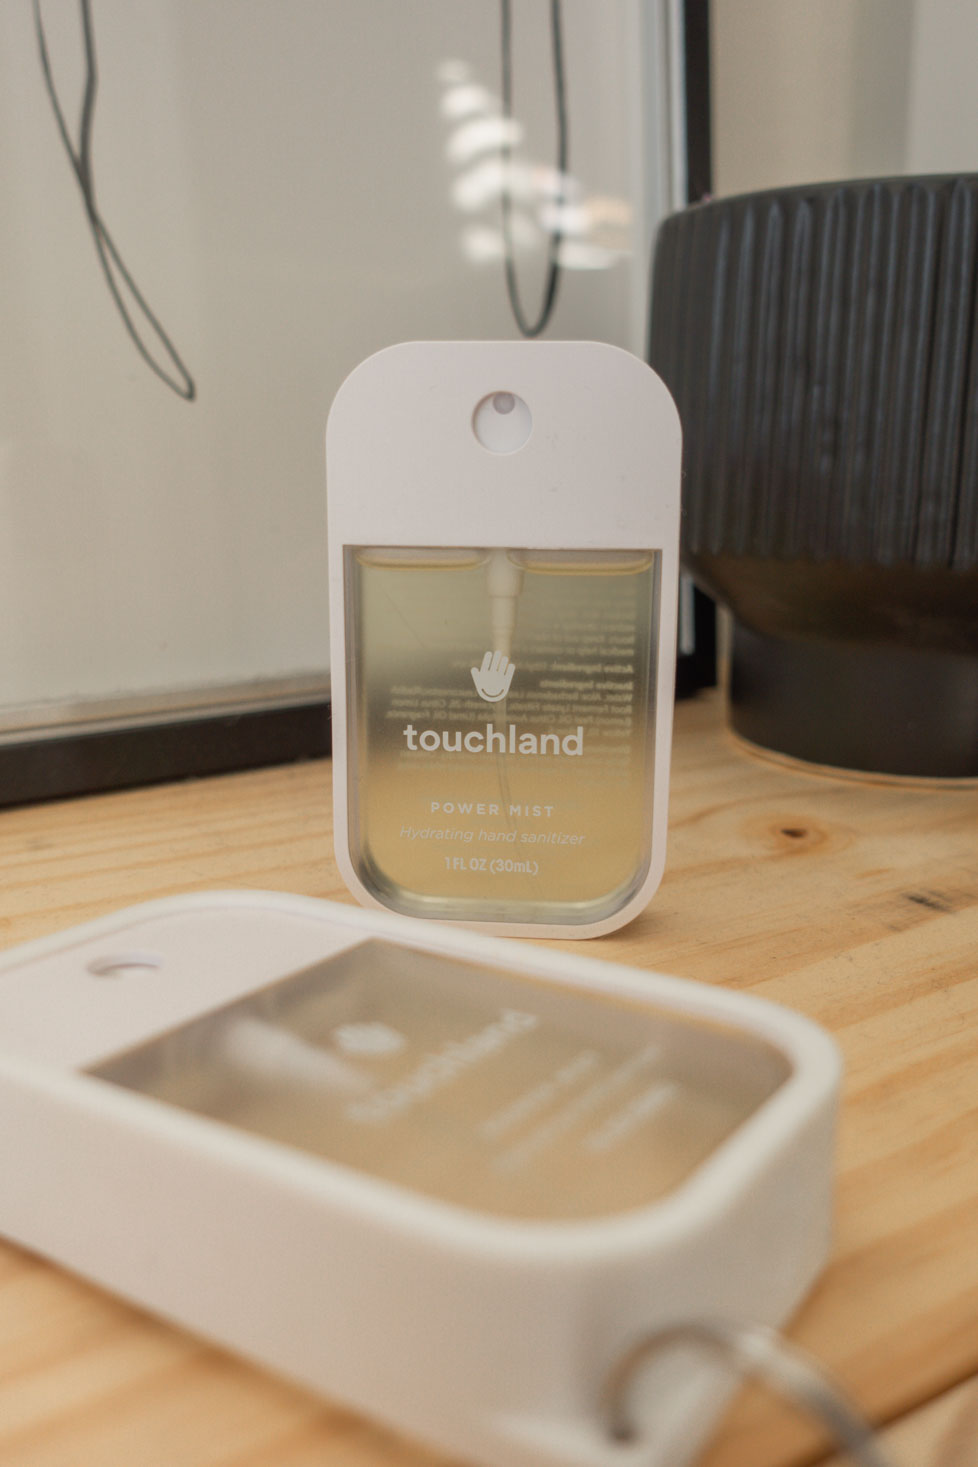 Touchland Hand Sanitizer - Travel Essentials for Women